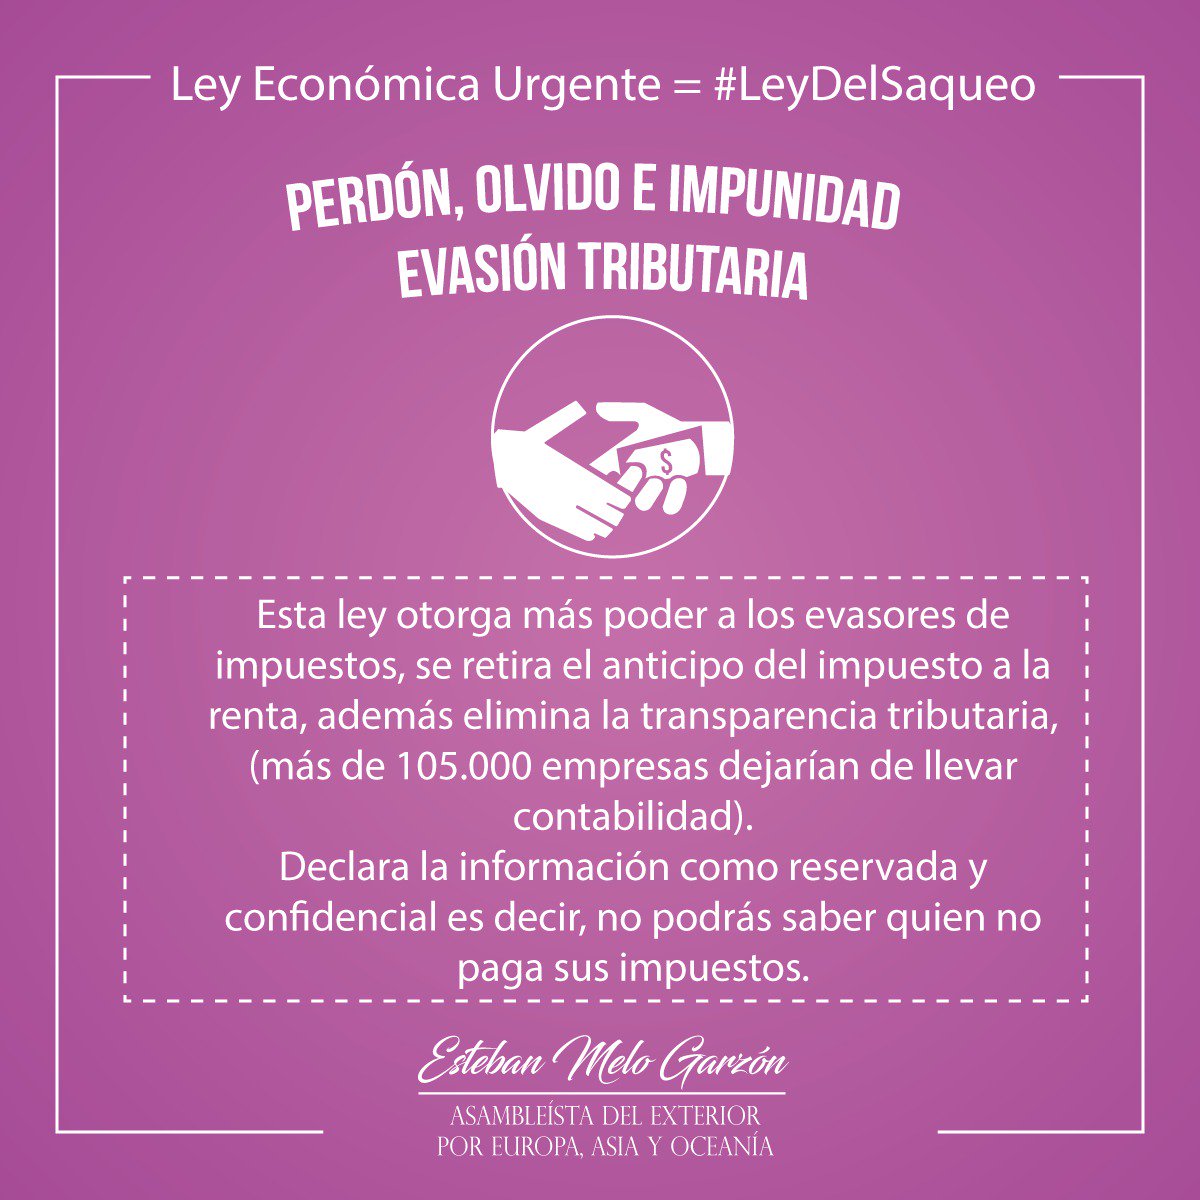 Esteban Melo Garzon S Tweet Mediante La Ley Economica Urgente